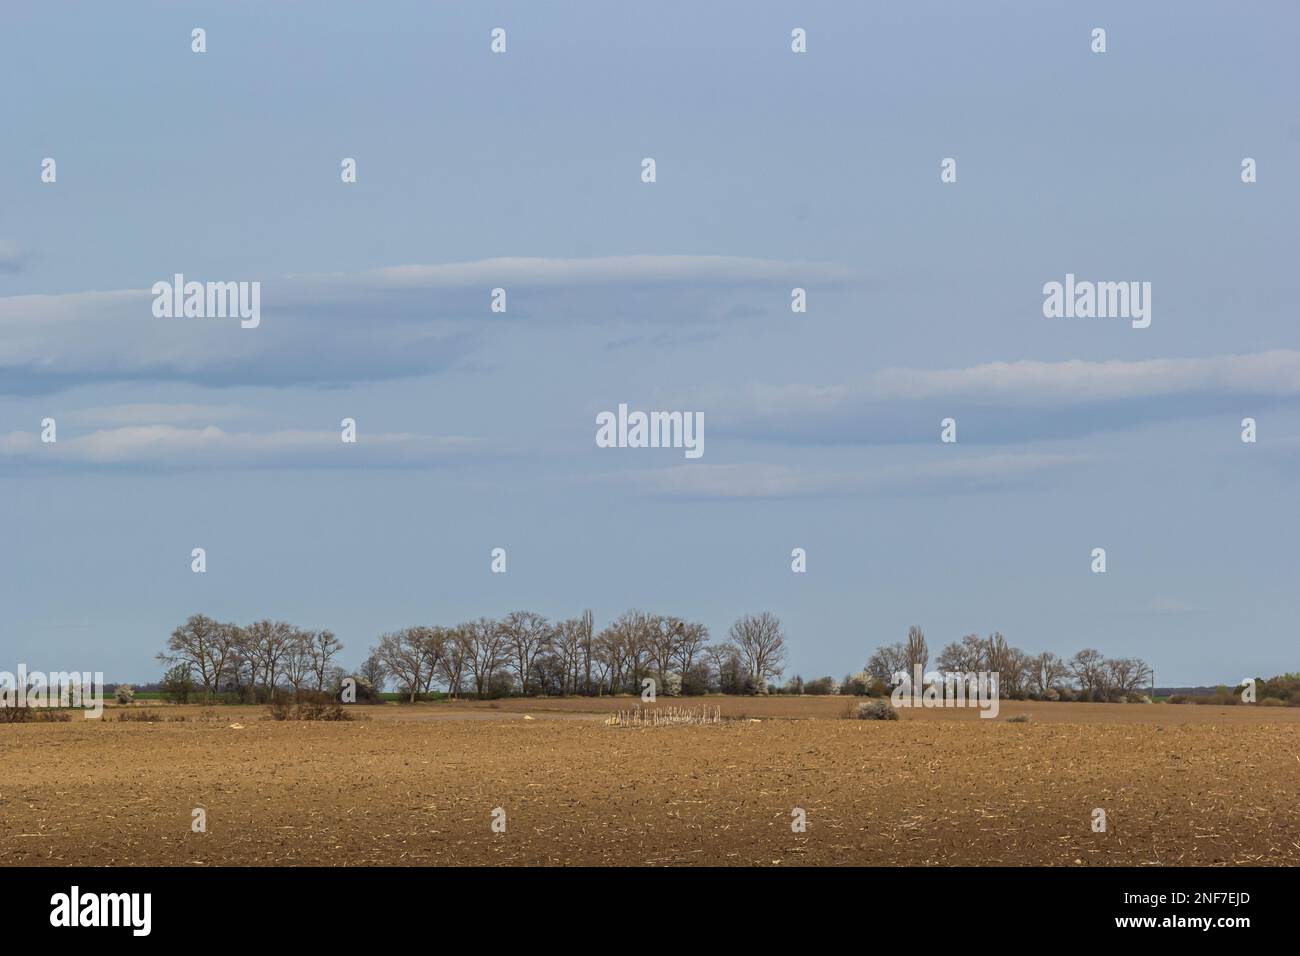 campos arados, varios árboles en la distancia en la línea del horizonte, espacio de copia, horizontal. Foto de stock